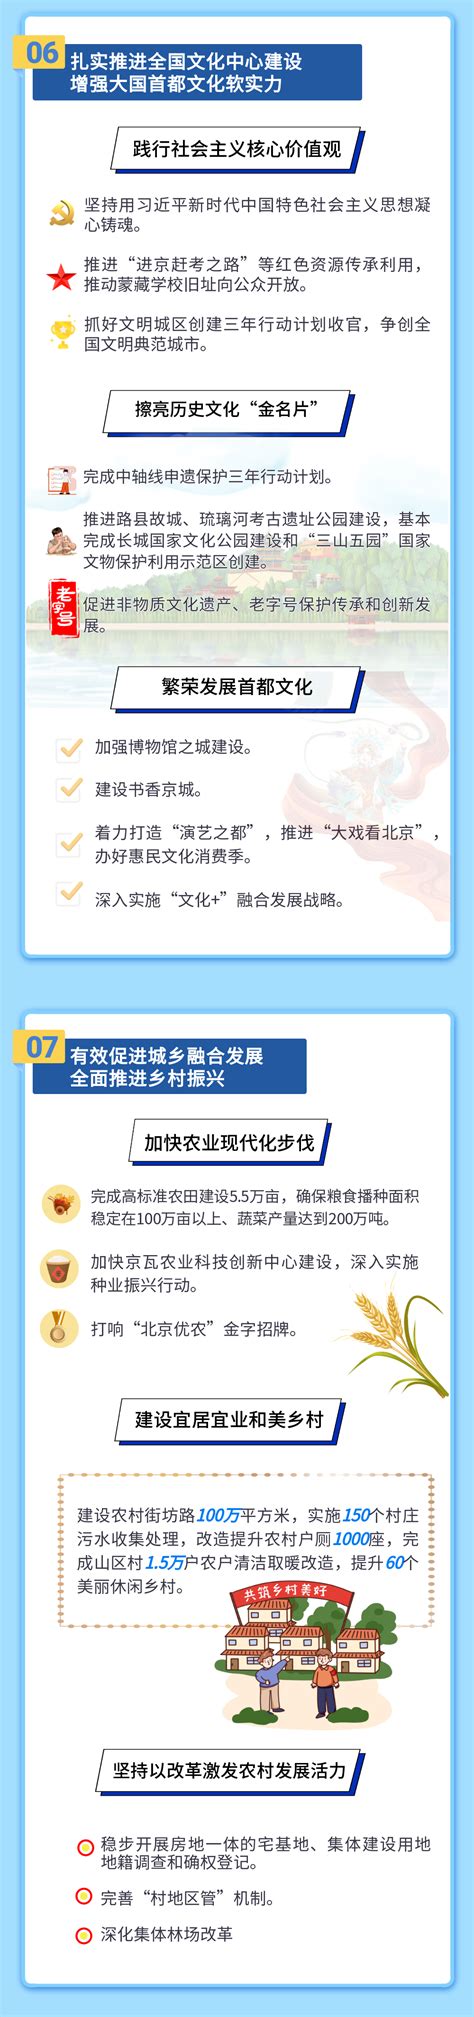 北京16区政府网站改版，首屏有了个性化形象_最新动态_国脉电子政务网